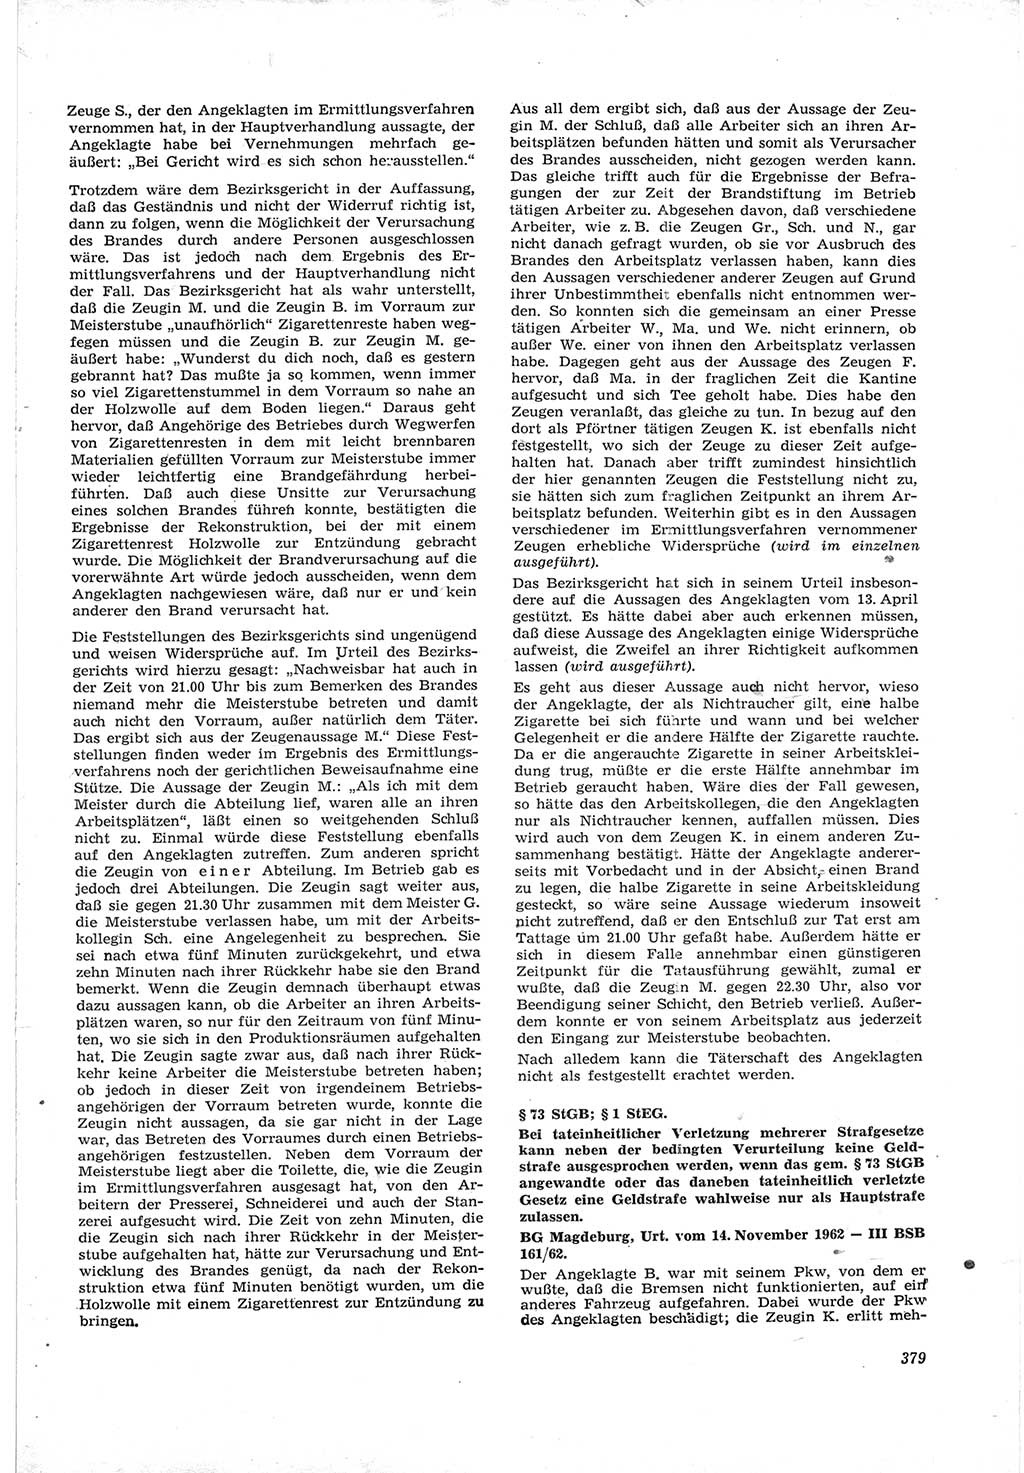 Neue Justiz (NJ), Zeitschrift für Recht und Rechtswissenschaft [Deutsche Demokratische Republik (DDR)], 17. Jahrgang 1963, Seite 379 (NJ DDR 1963, S. 379)